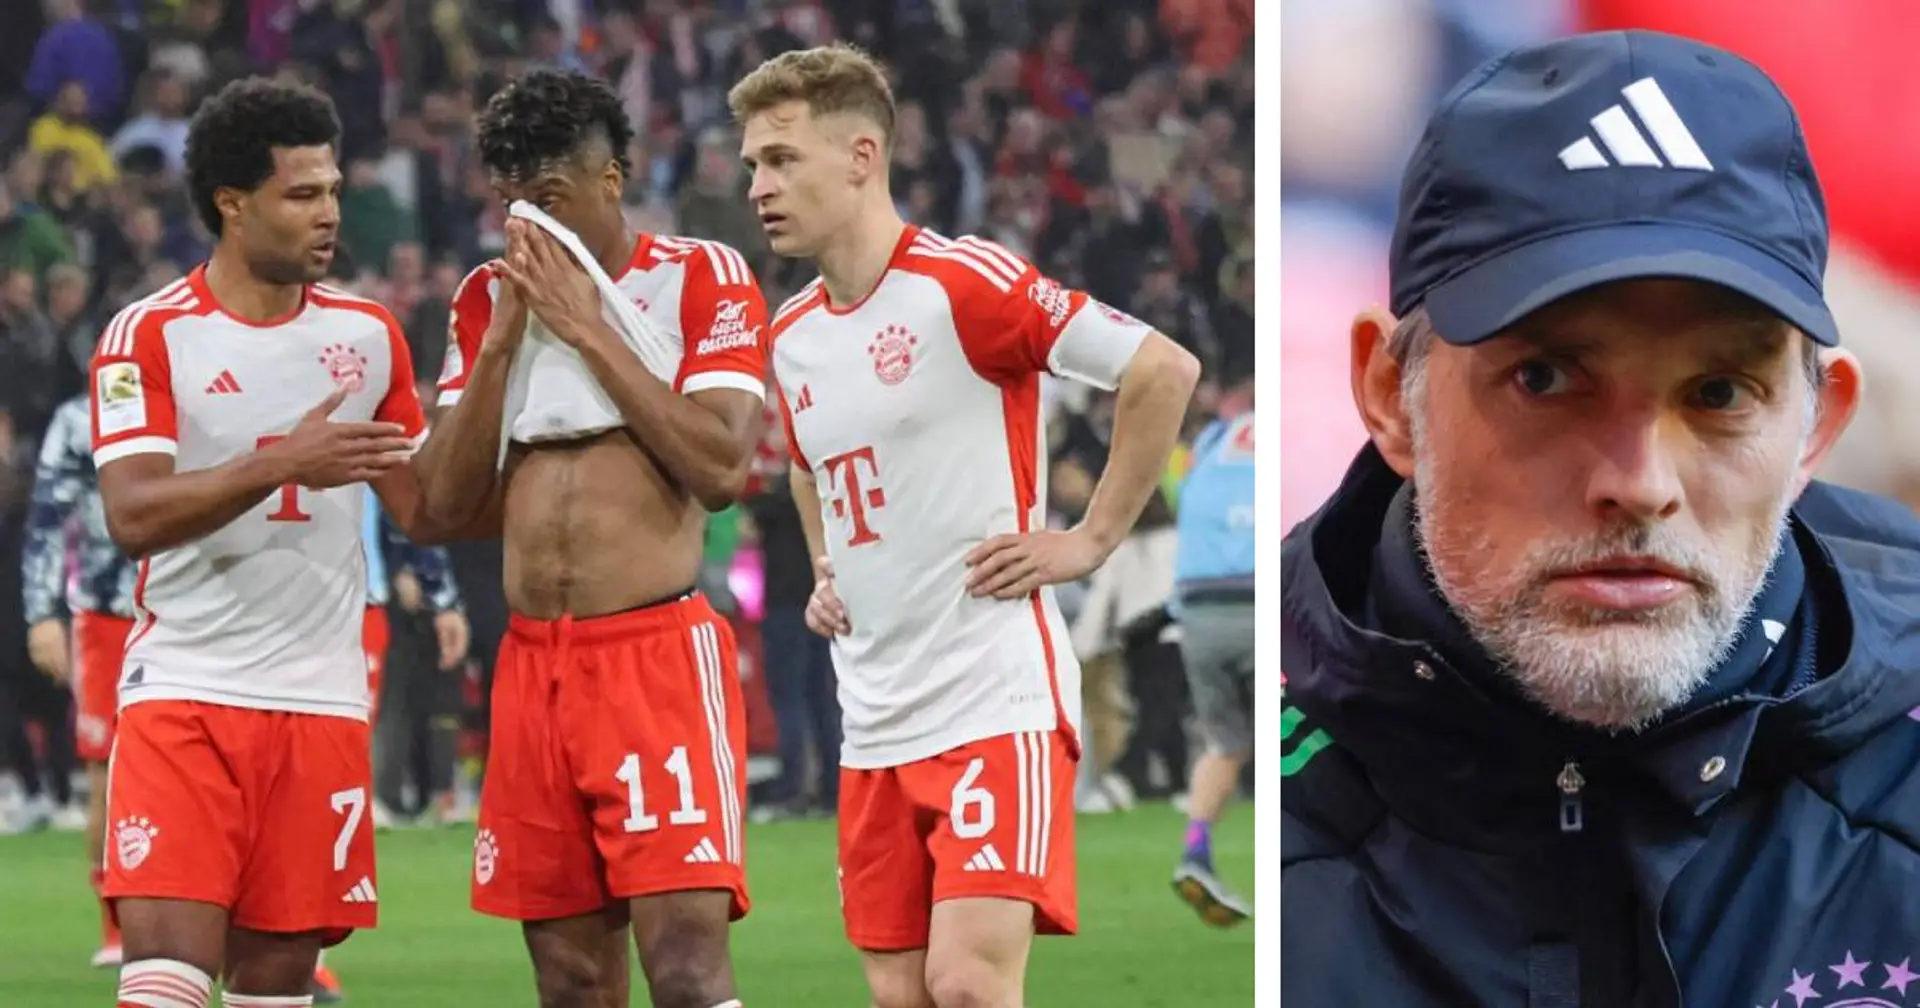 Verhältnis zwischen Tuchel und Bayern-Spielern ist  "kaum noch existent" - Bericht